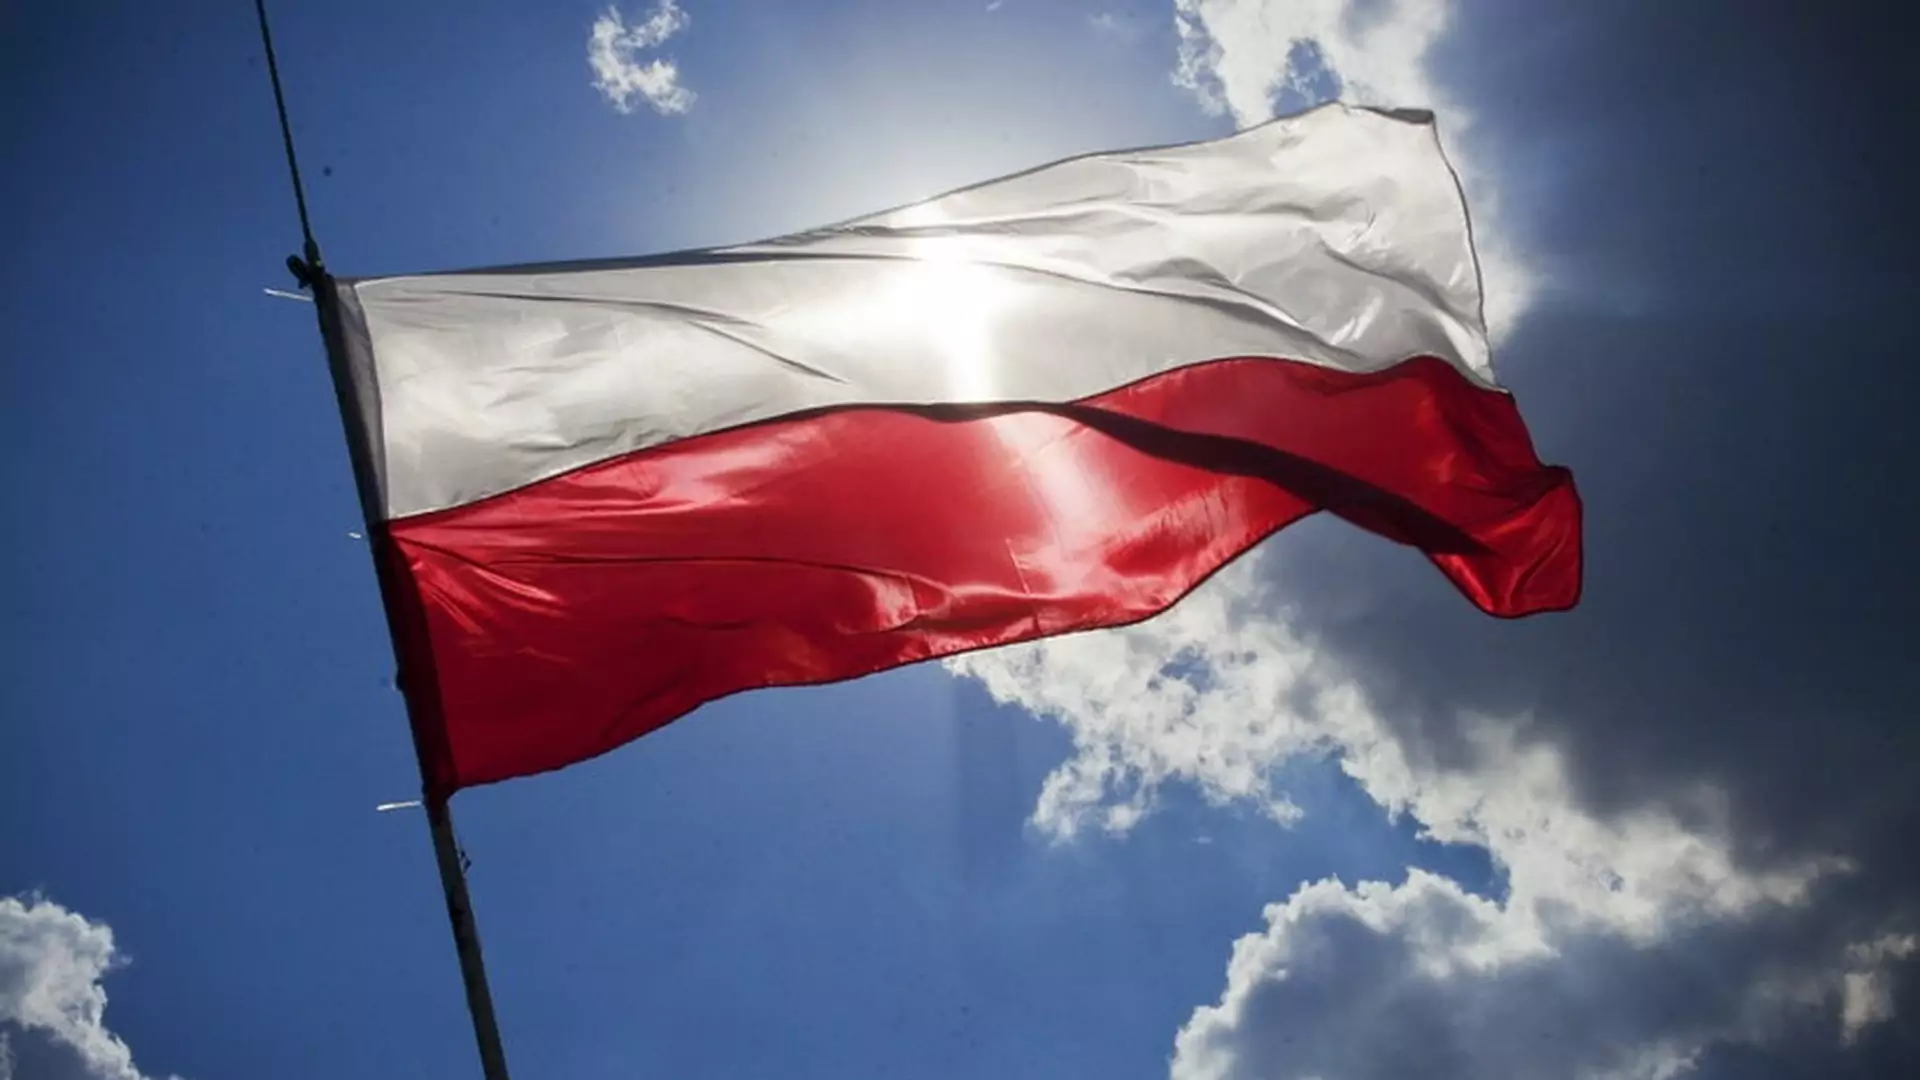 Politycy, uwaga! Polaków zawsze złączą kolejki i flaga